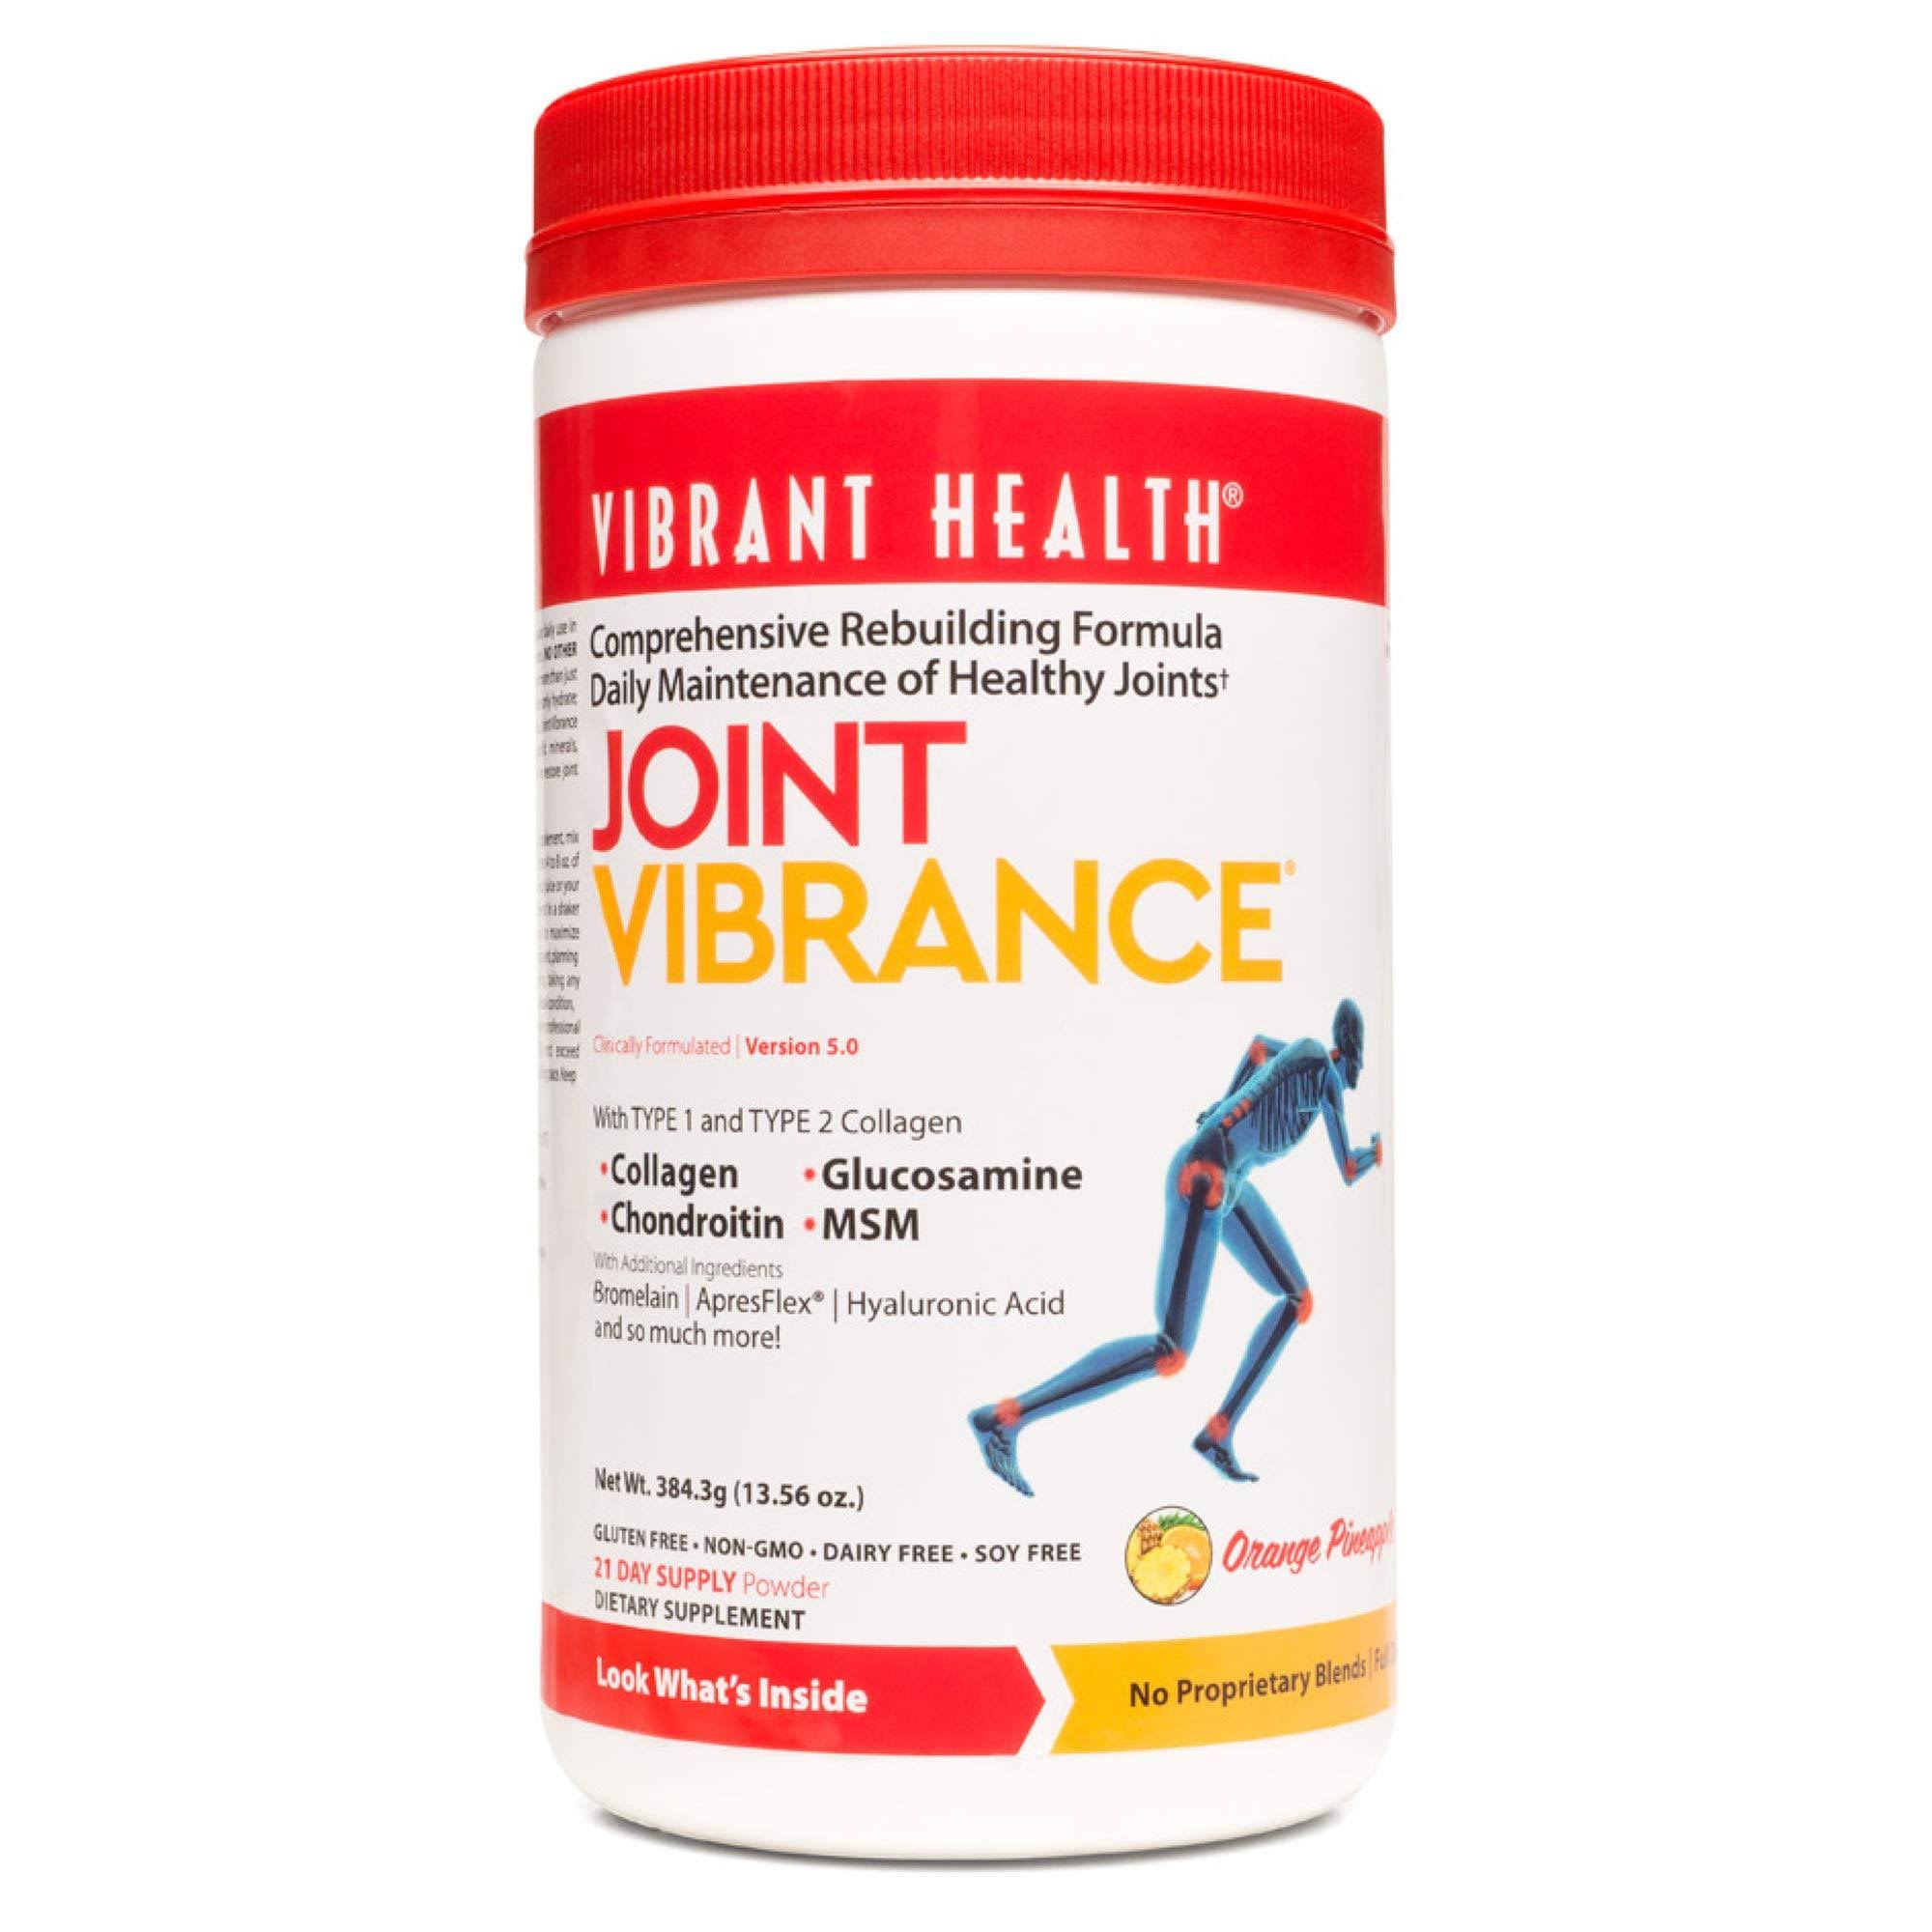 Vibrant Health - Joint Vibrance - 13.1 Ounce